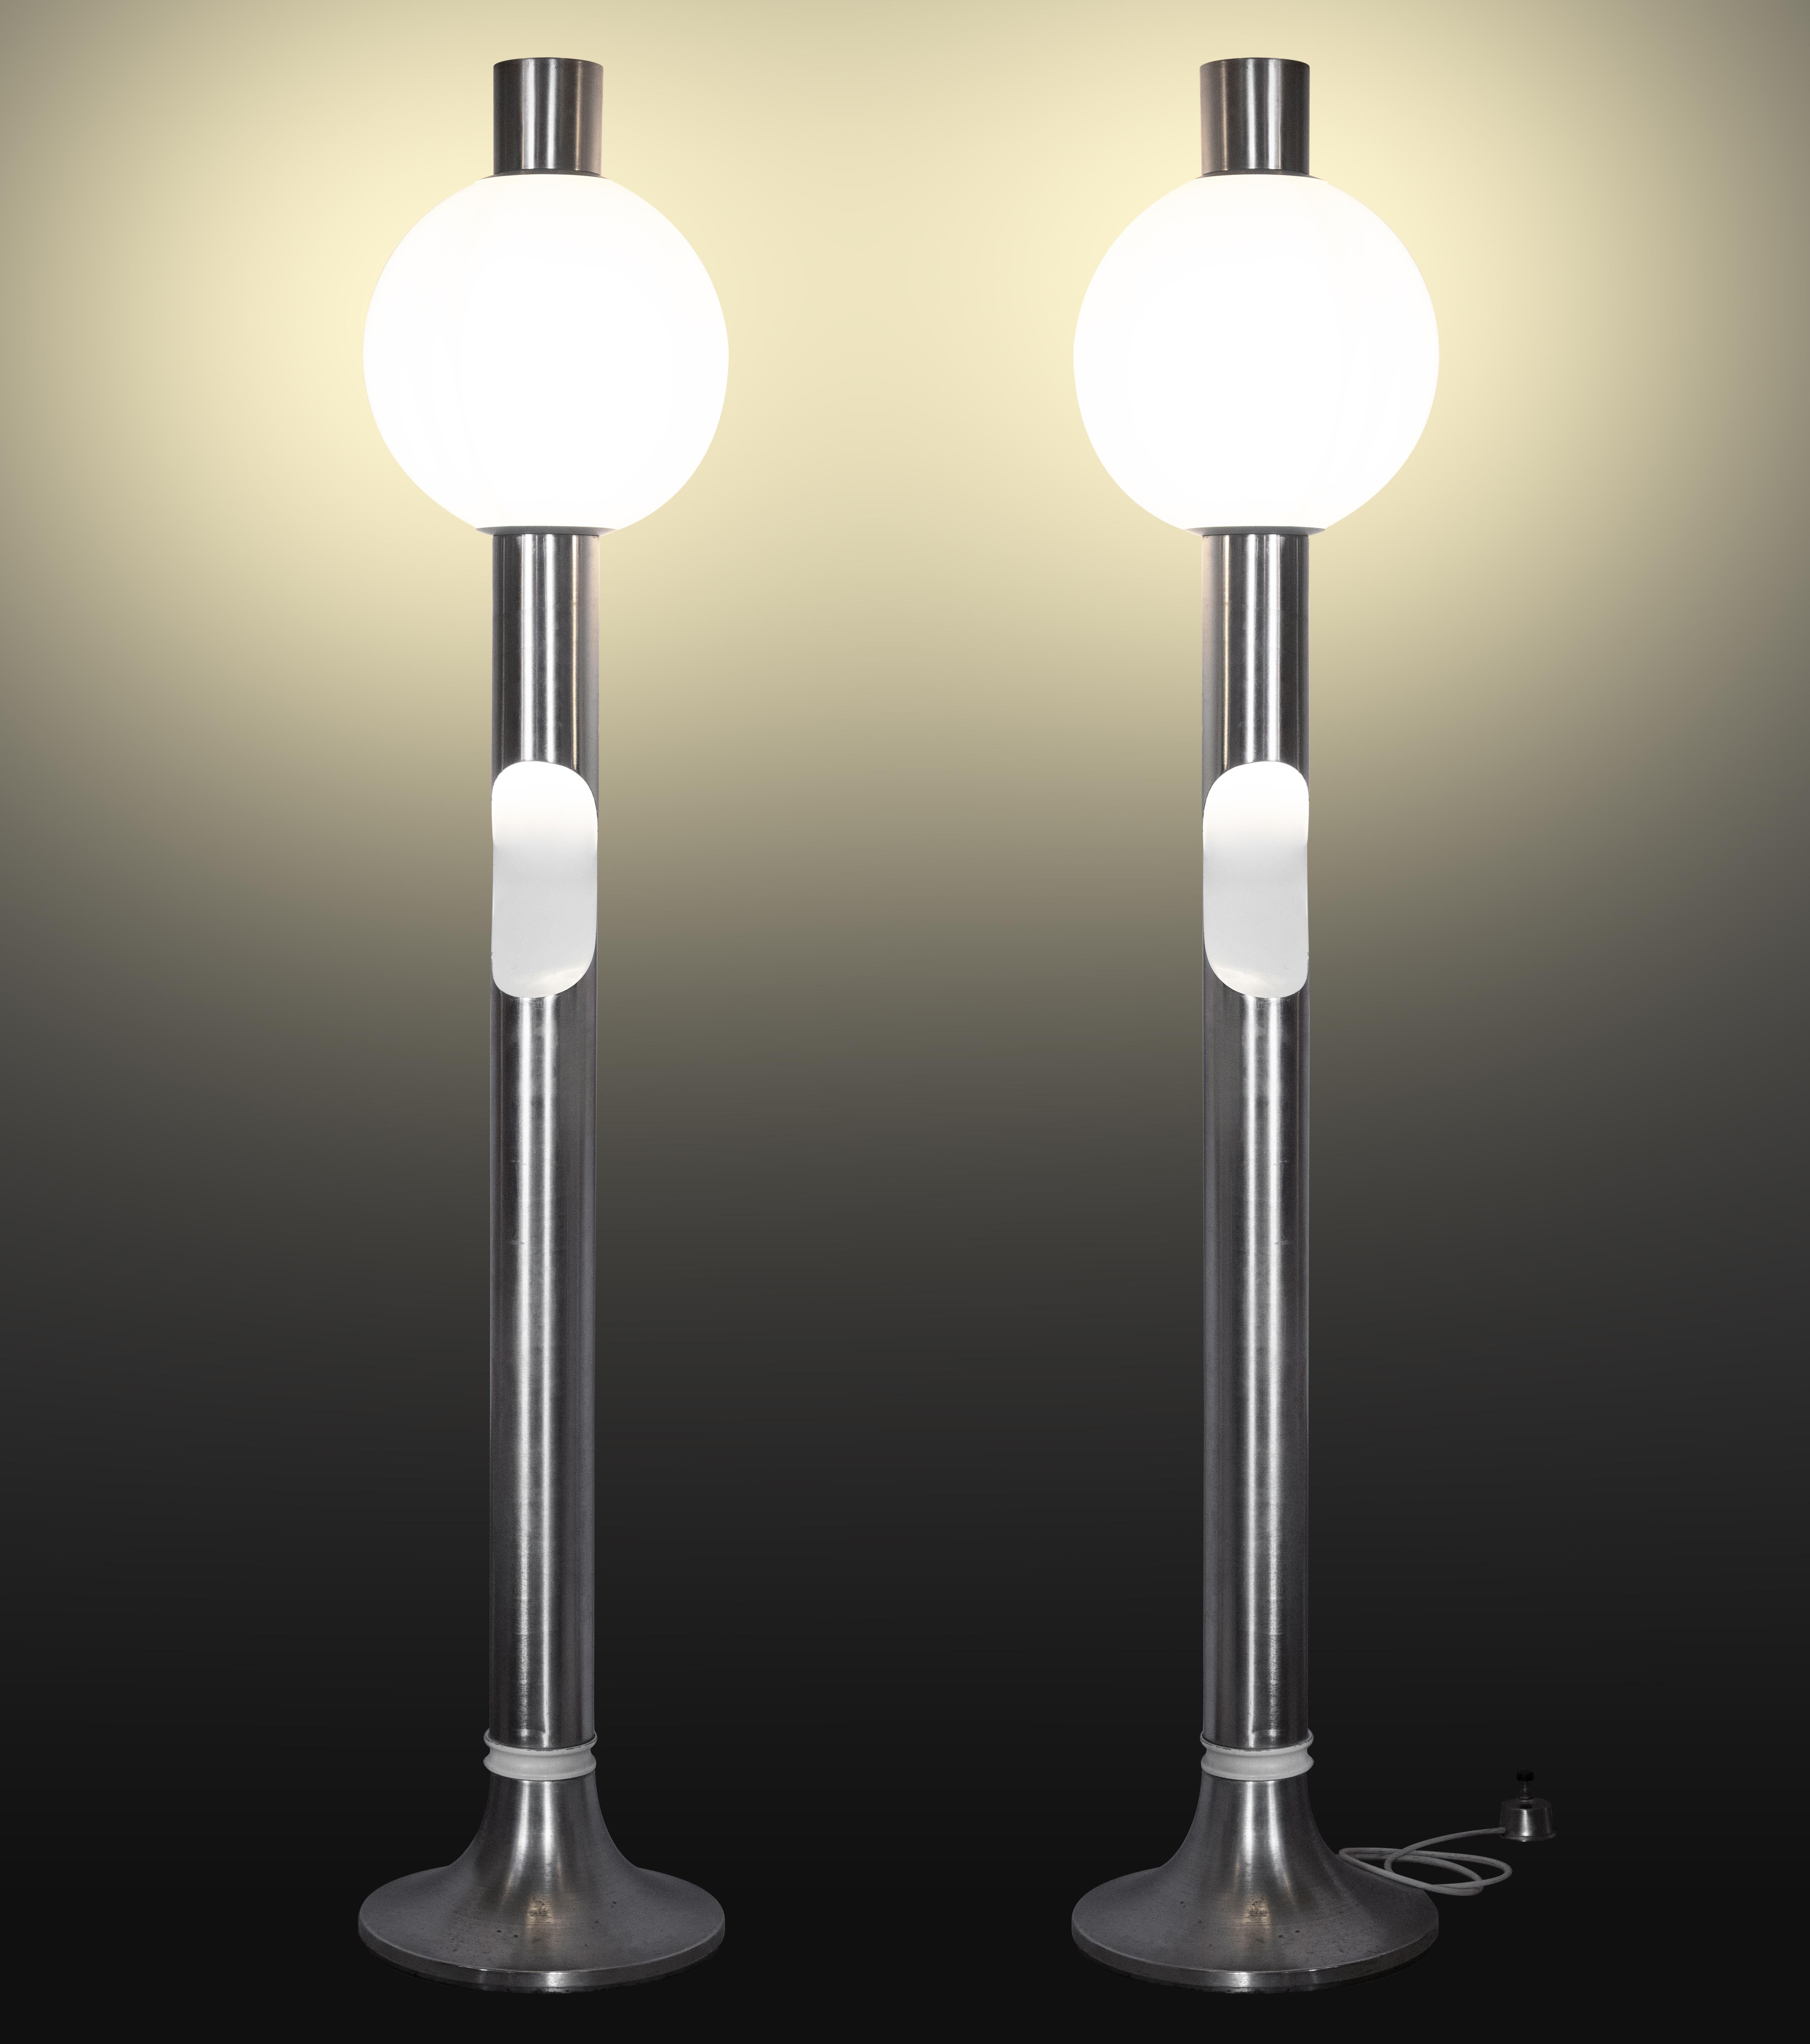 Cette paire de lampadaires est une lampe originale réalisée dans les années 1970 par Angelo Brotto (Venise, 1914 - Campiglia Marittina, 2002).

Créé pour Esperia.

Acier et verre. 

Très bon état.

Dimensions totales : 180 x 35 x 35 cm. Le poids est